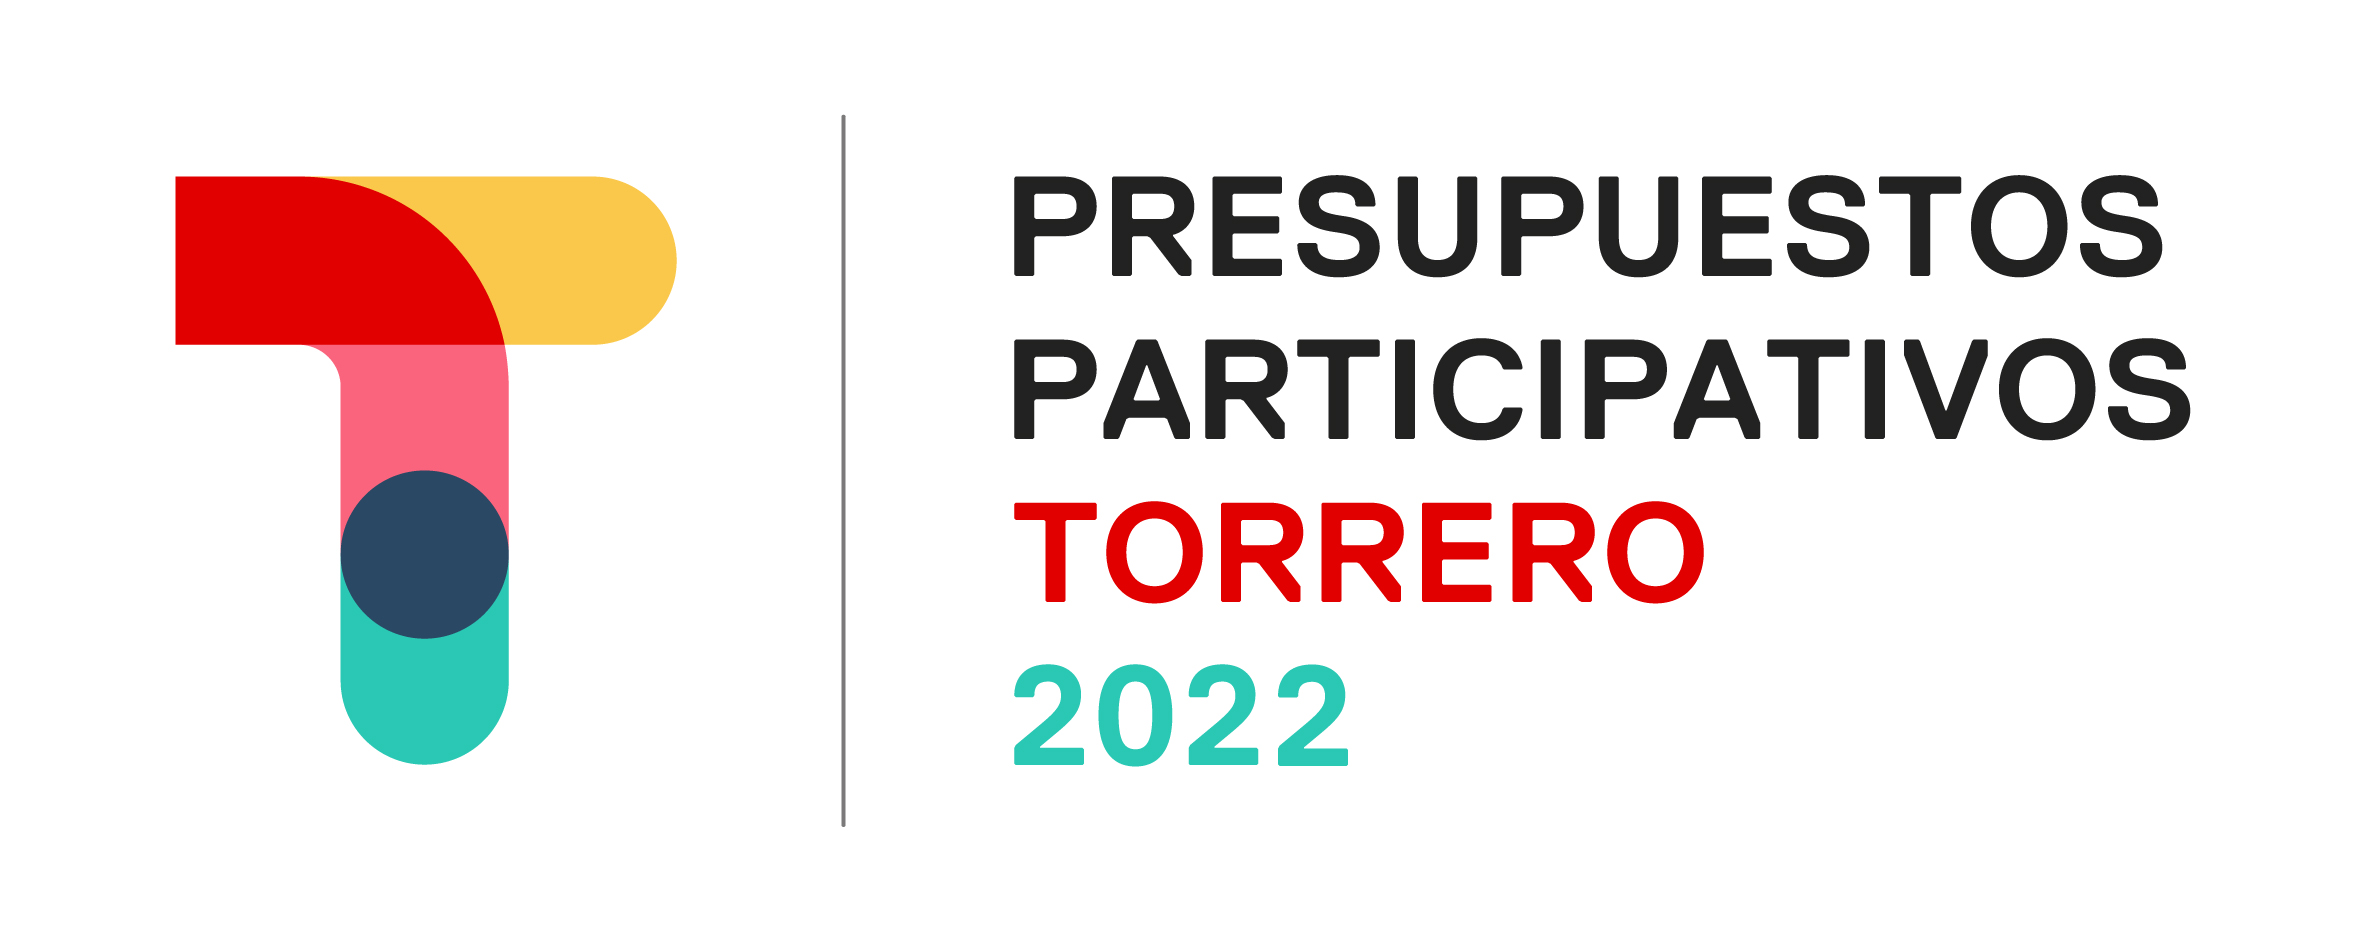 Presupuestos Participativos Torrero 2022